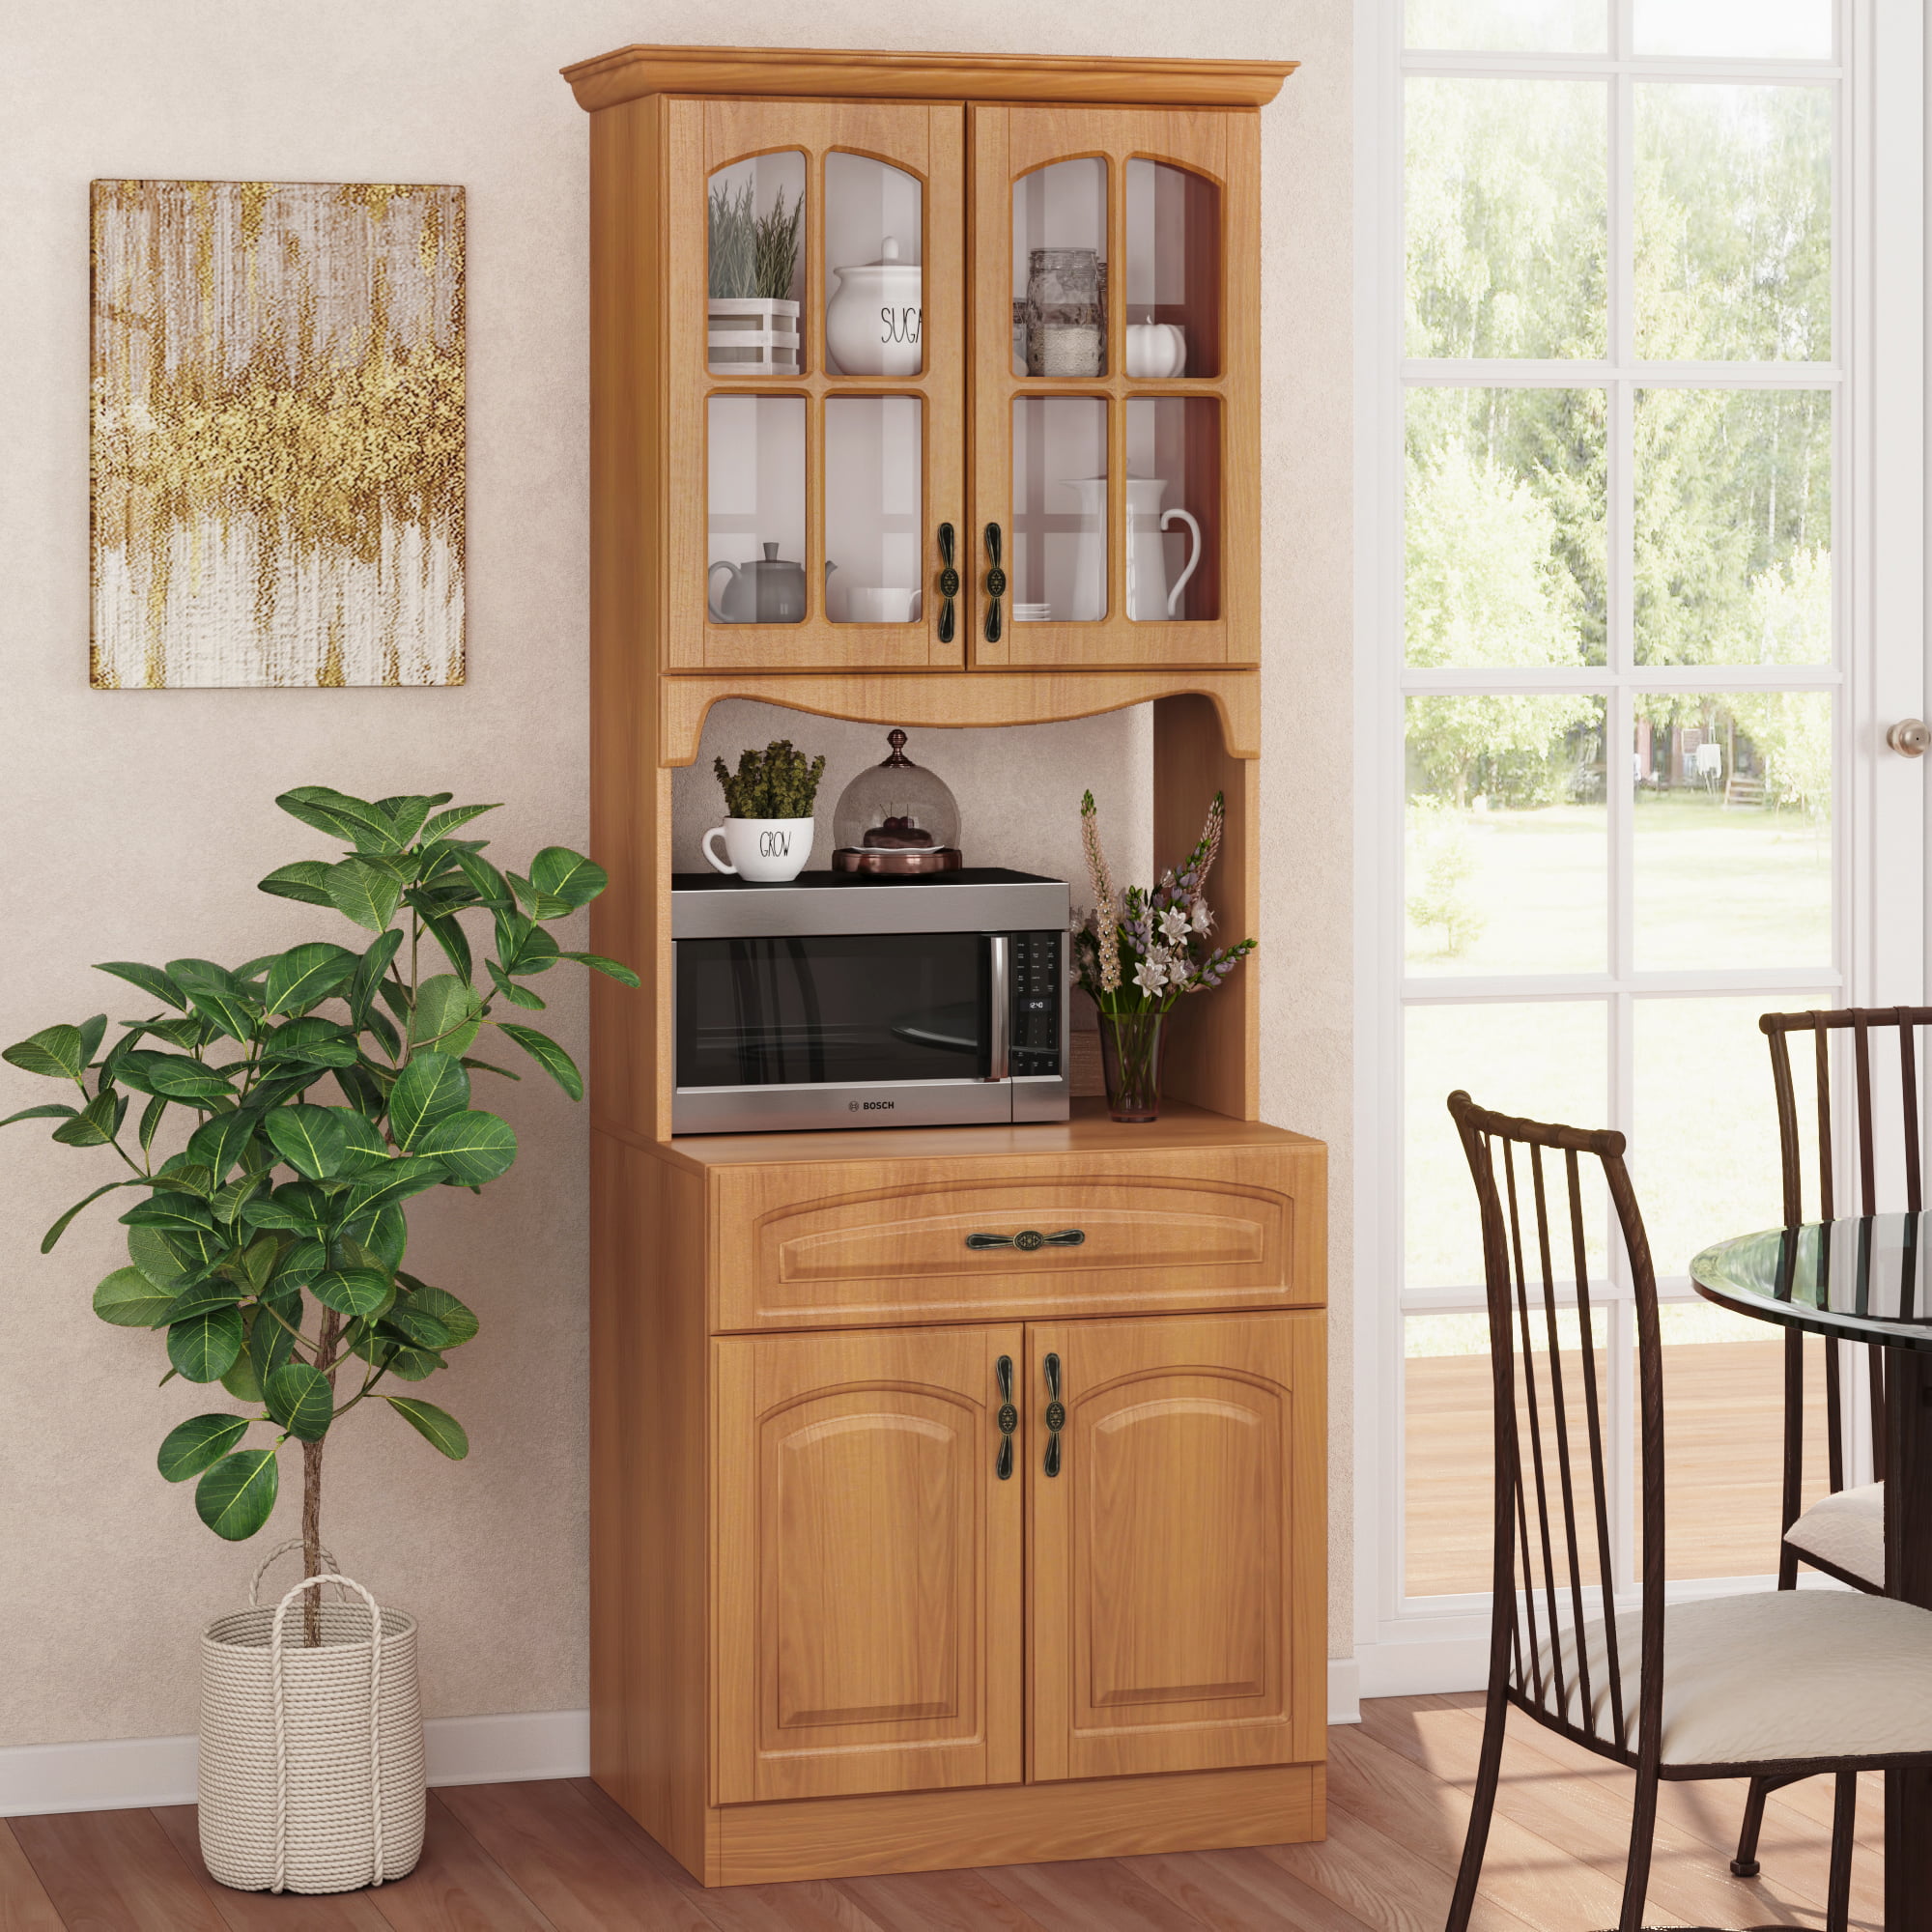 HOMCOM 72 Modern Kitchen Solid Storage Kitchen Cabinet Pantry with Sleek Minimal Design & Ample Storage Space White